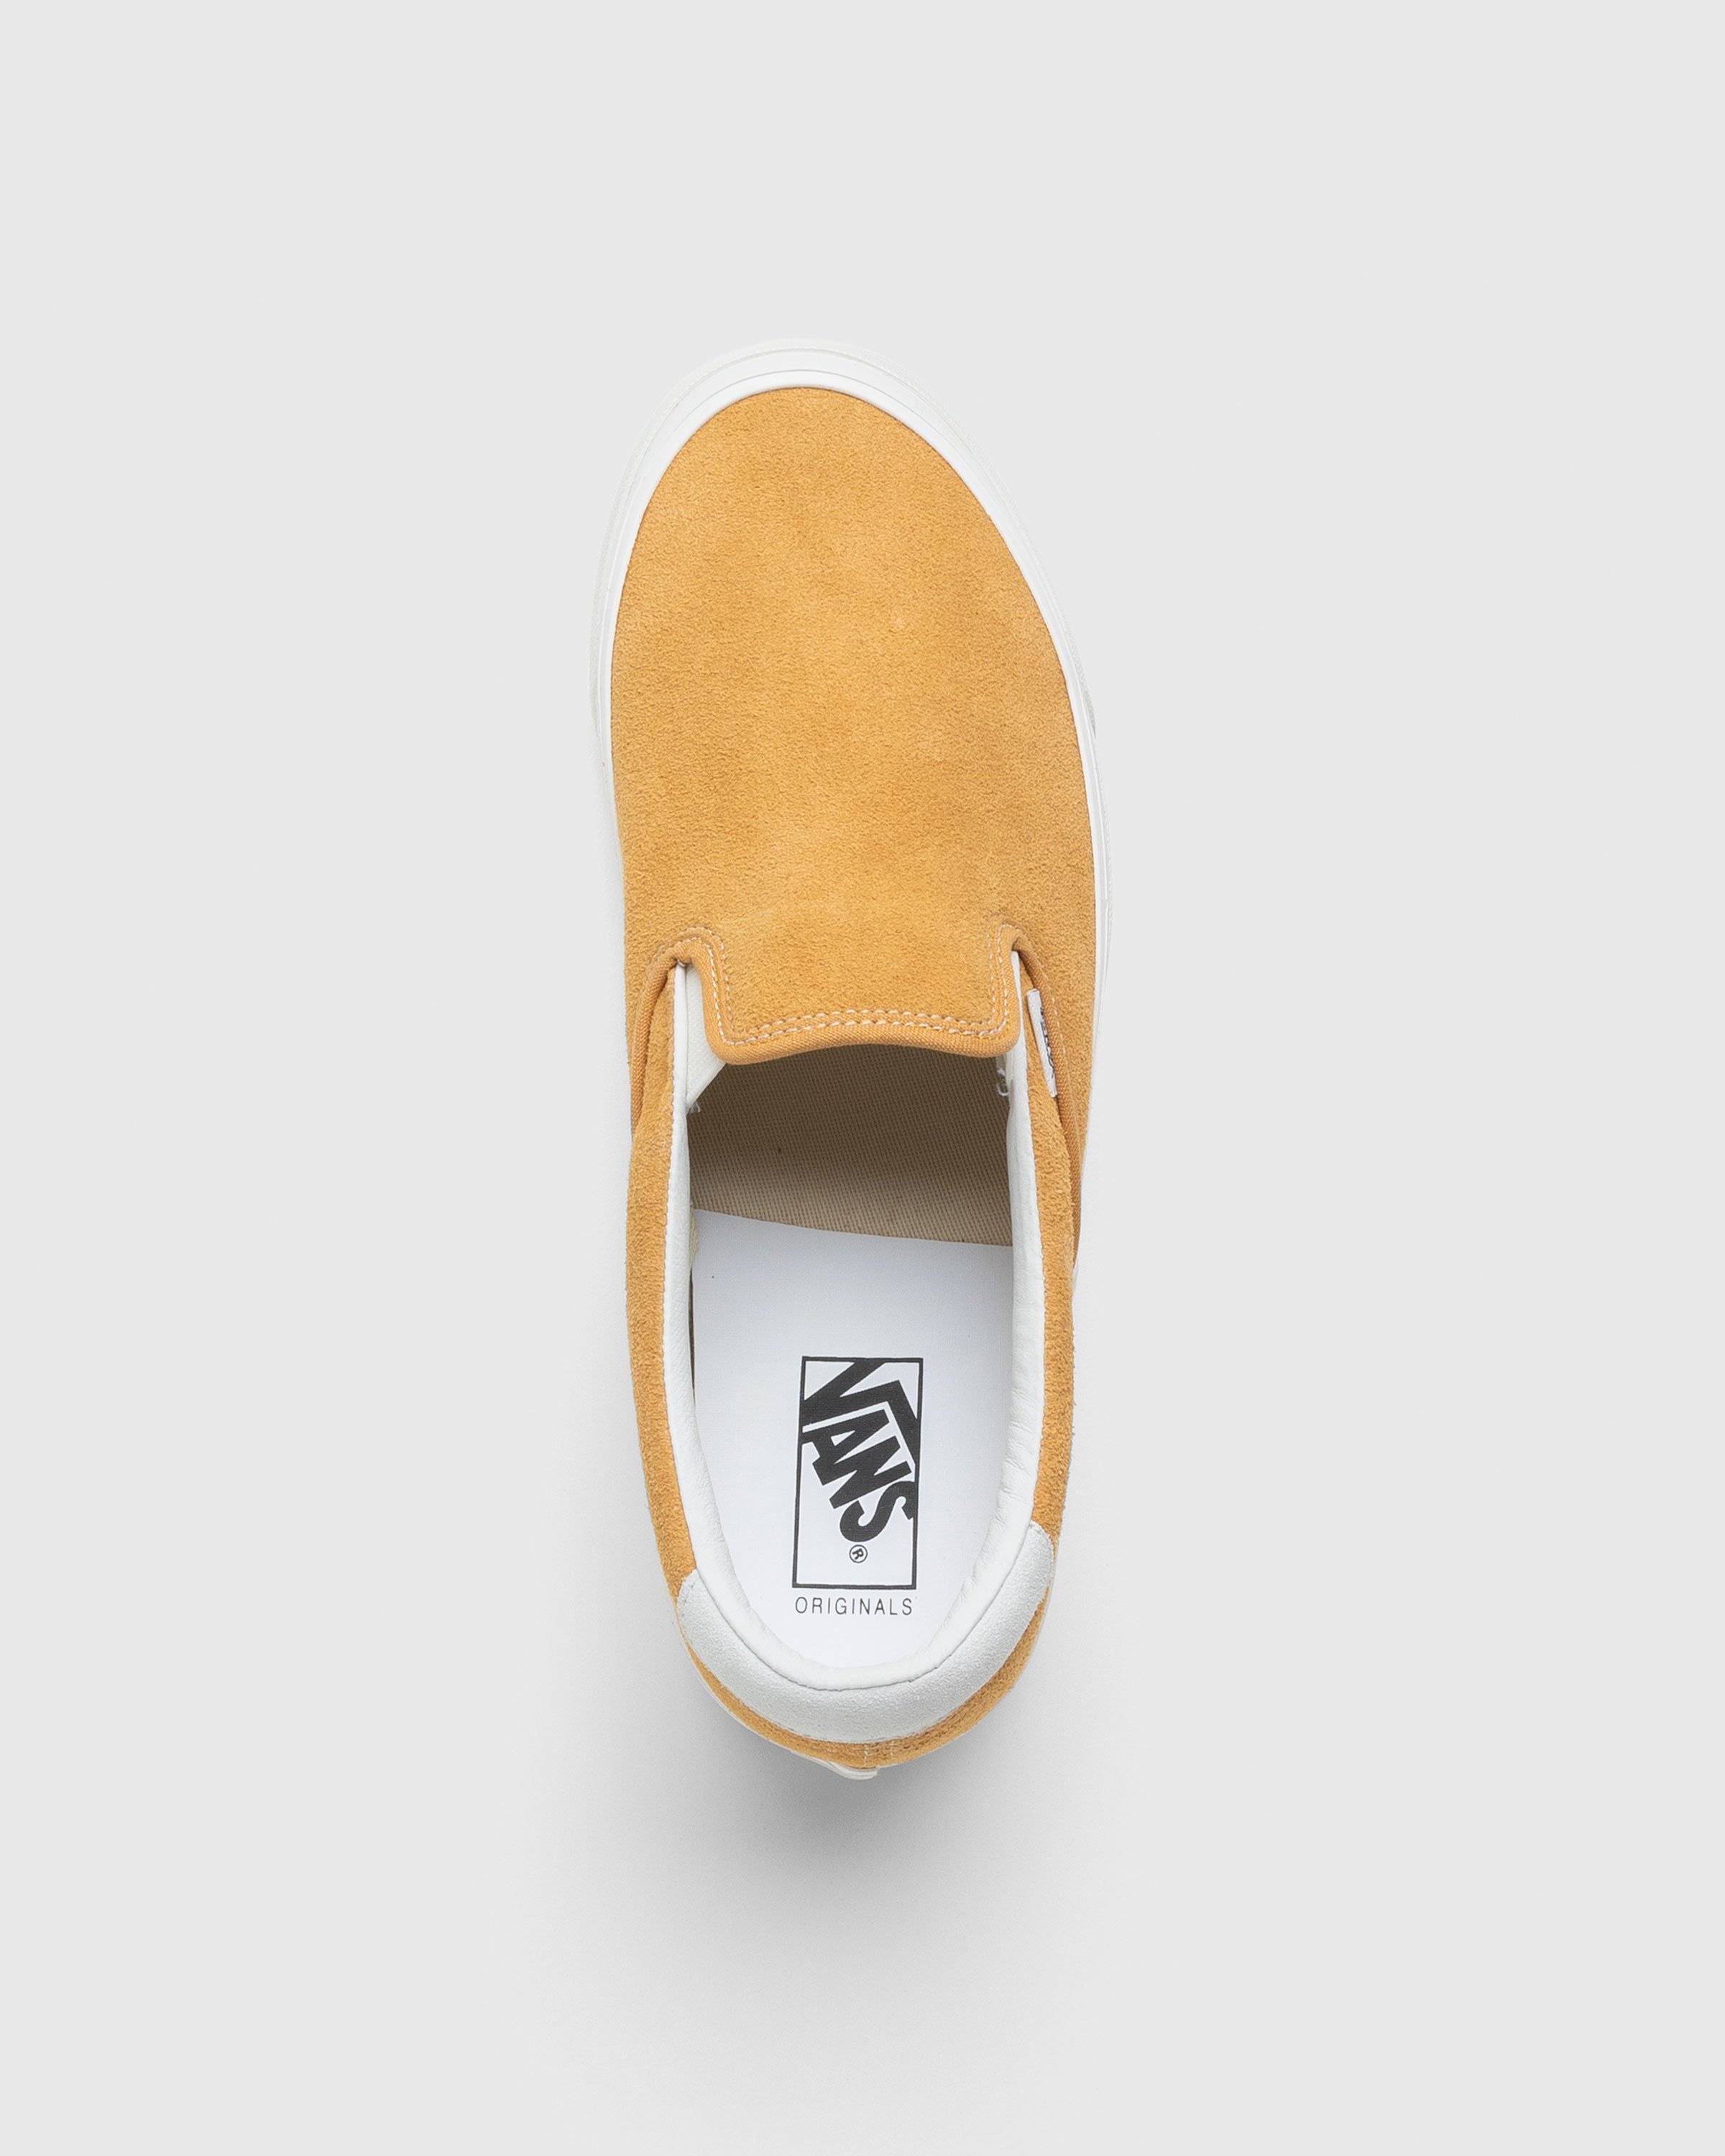 Vans - OG Slip-On 59 LX Suede Yellow - Footwear - Yellow - Image 5